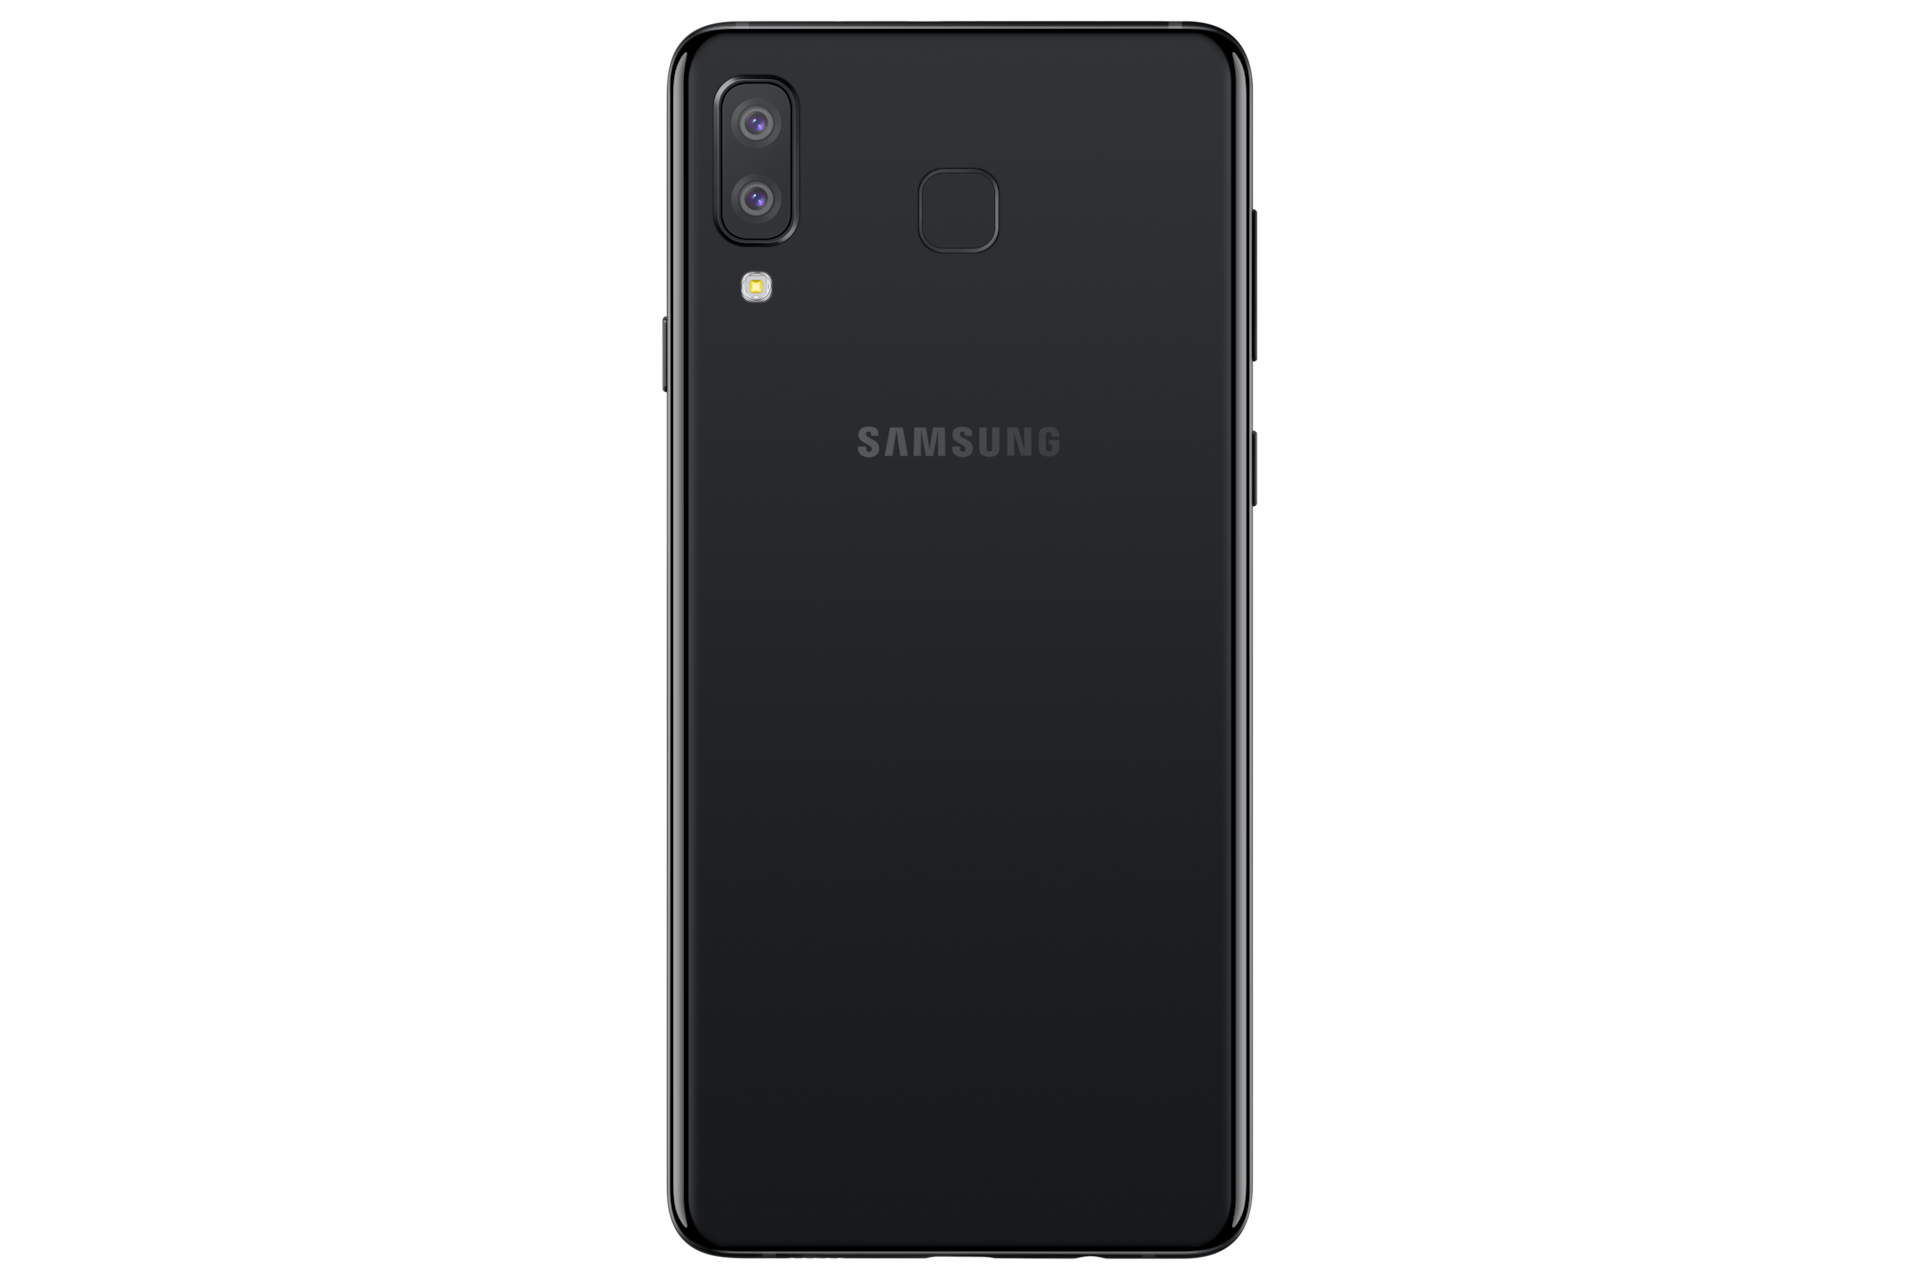 Daftar Hp Samsung Yang Turun Harga Terbaru Juni 2019 Samsung